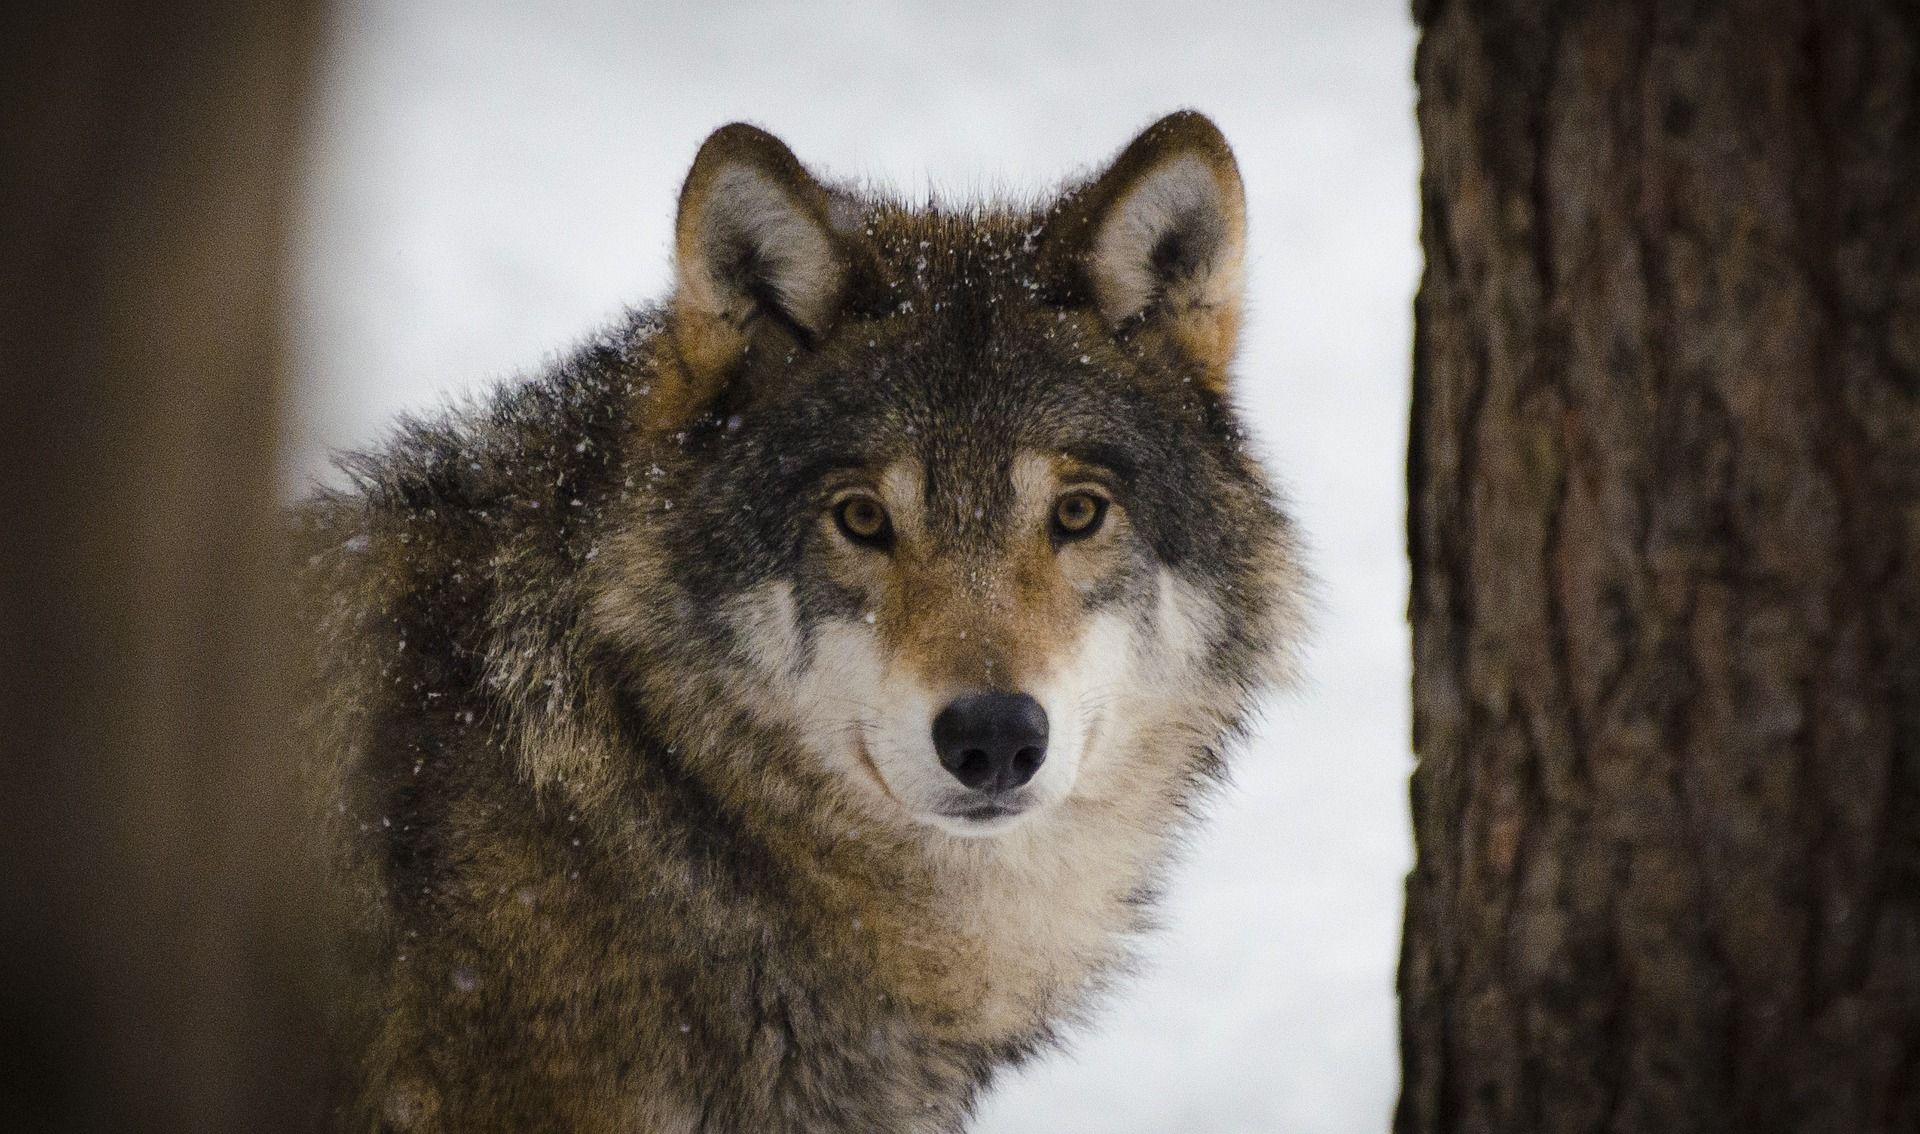 Interpelacja poselska dotycząca prawnej ochrony wilków w Polsce